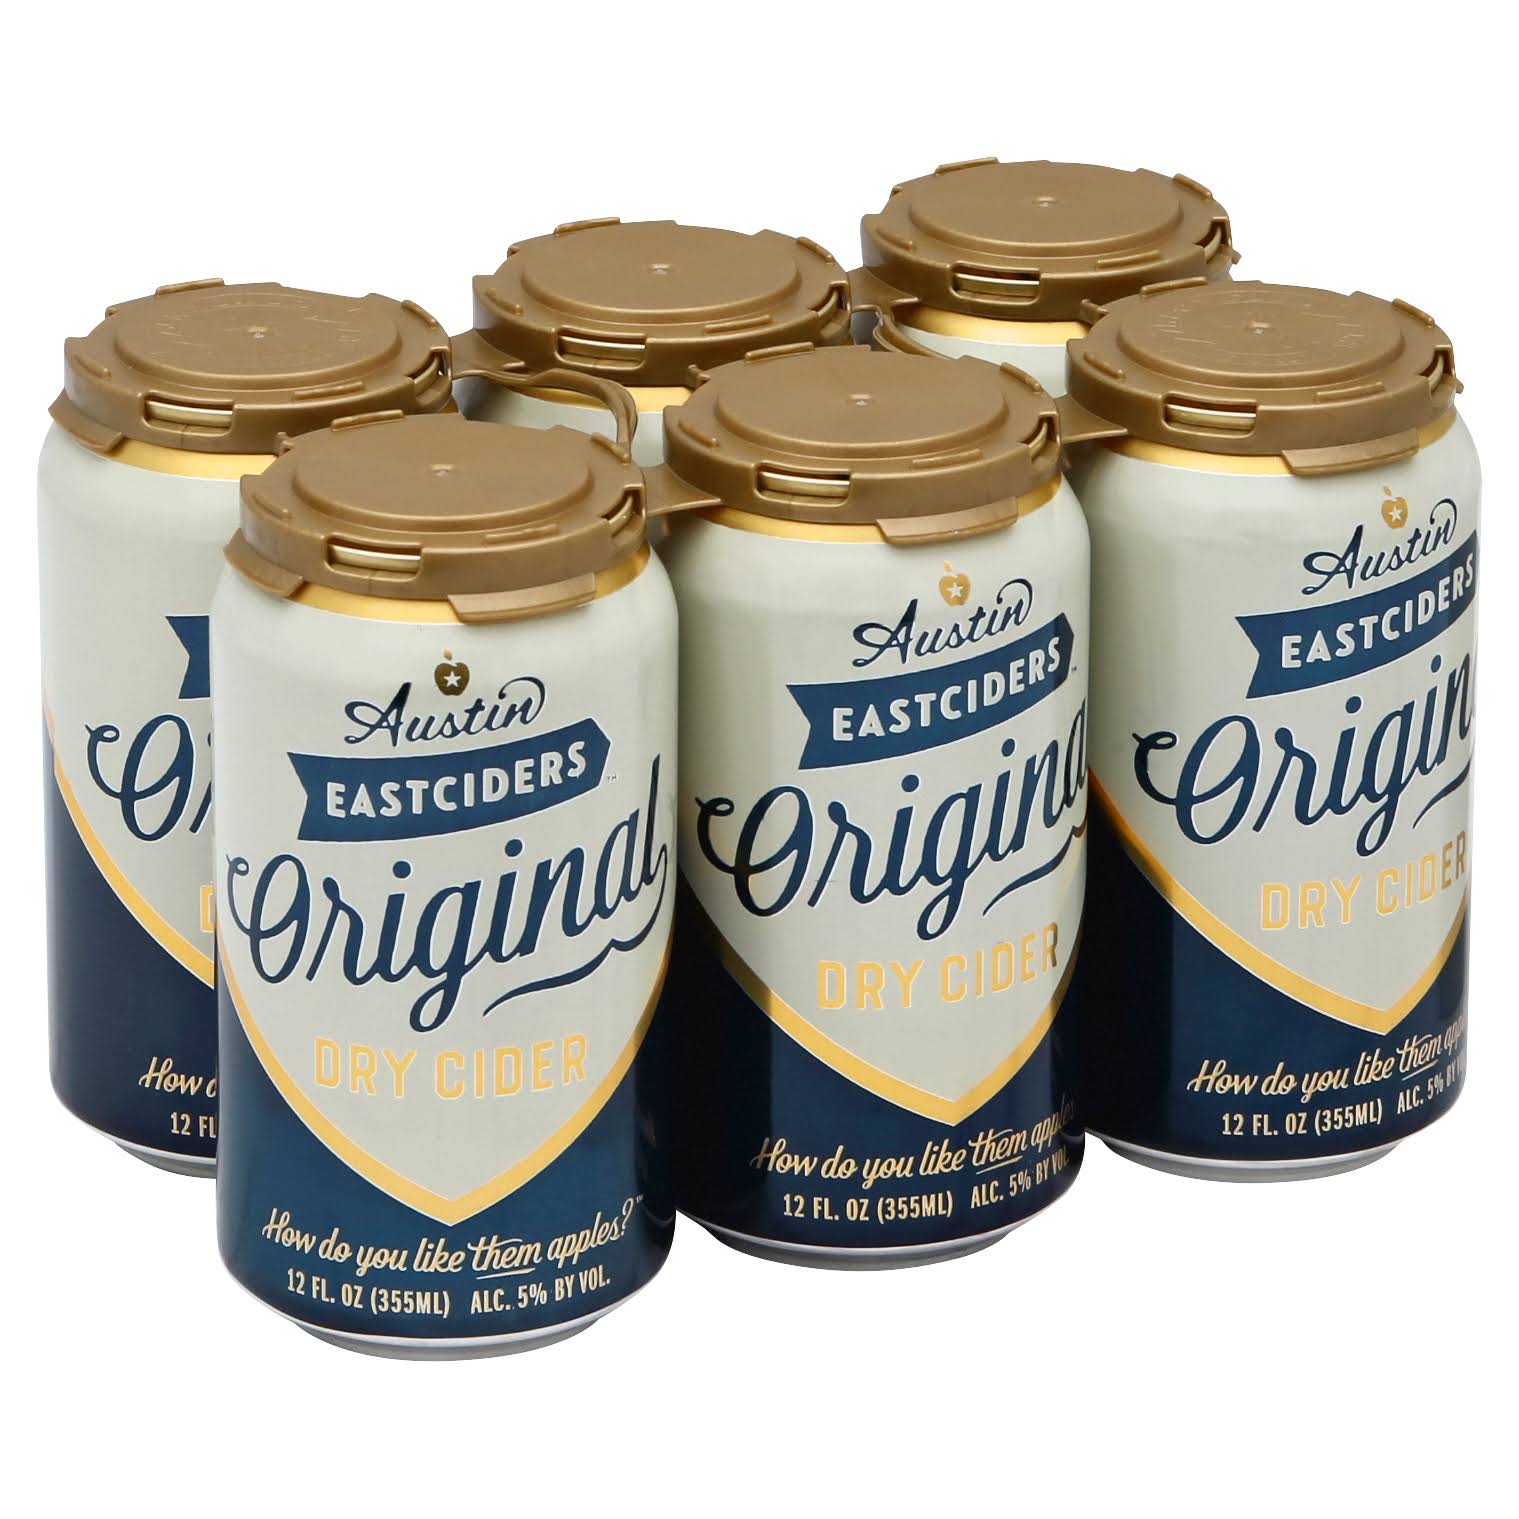 Austin Eastciders Dry Cider, Original - 6 pack, 12 fl oz cans